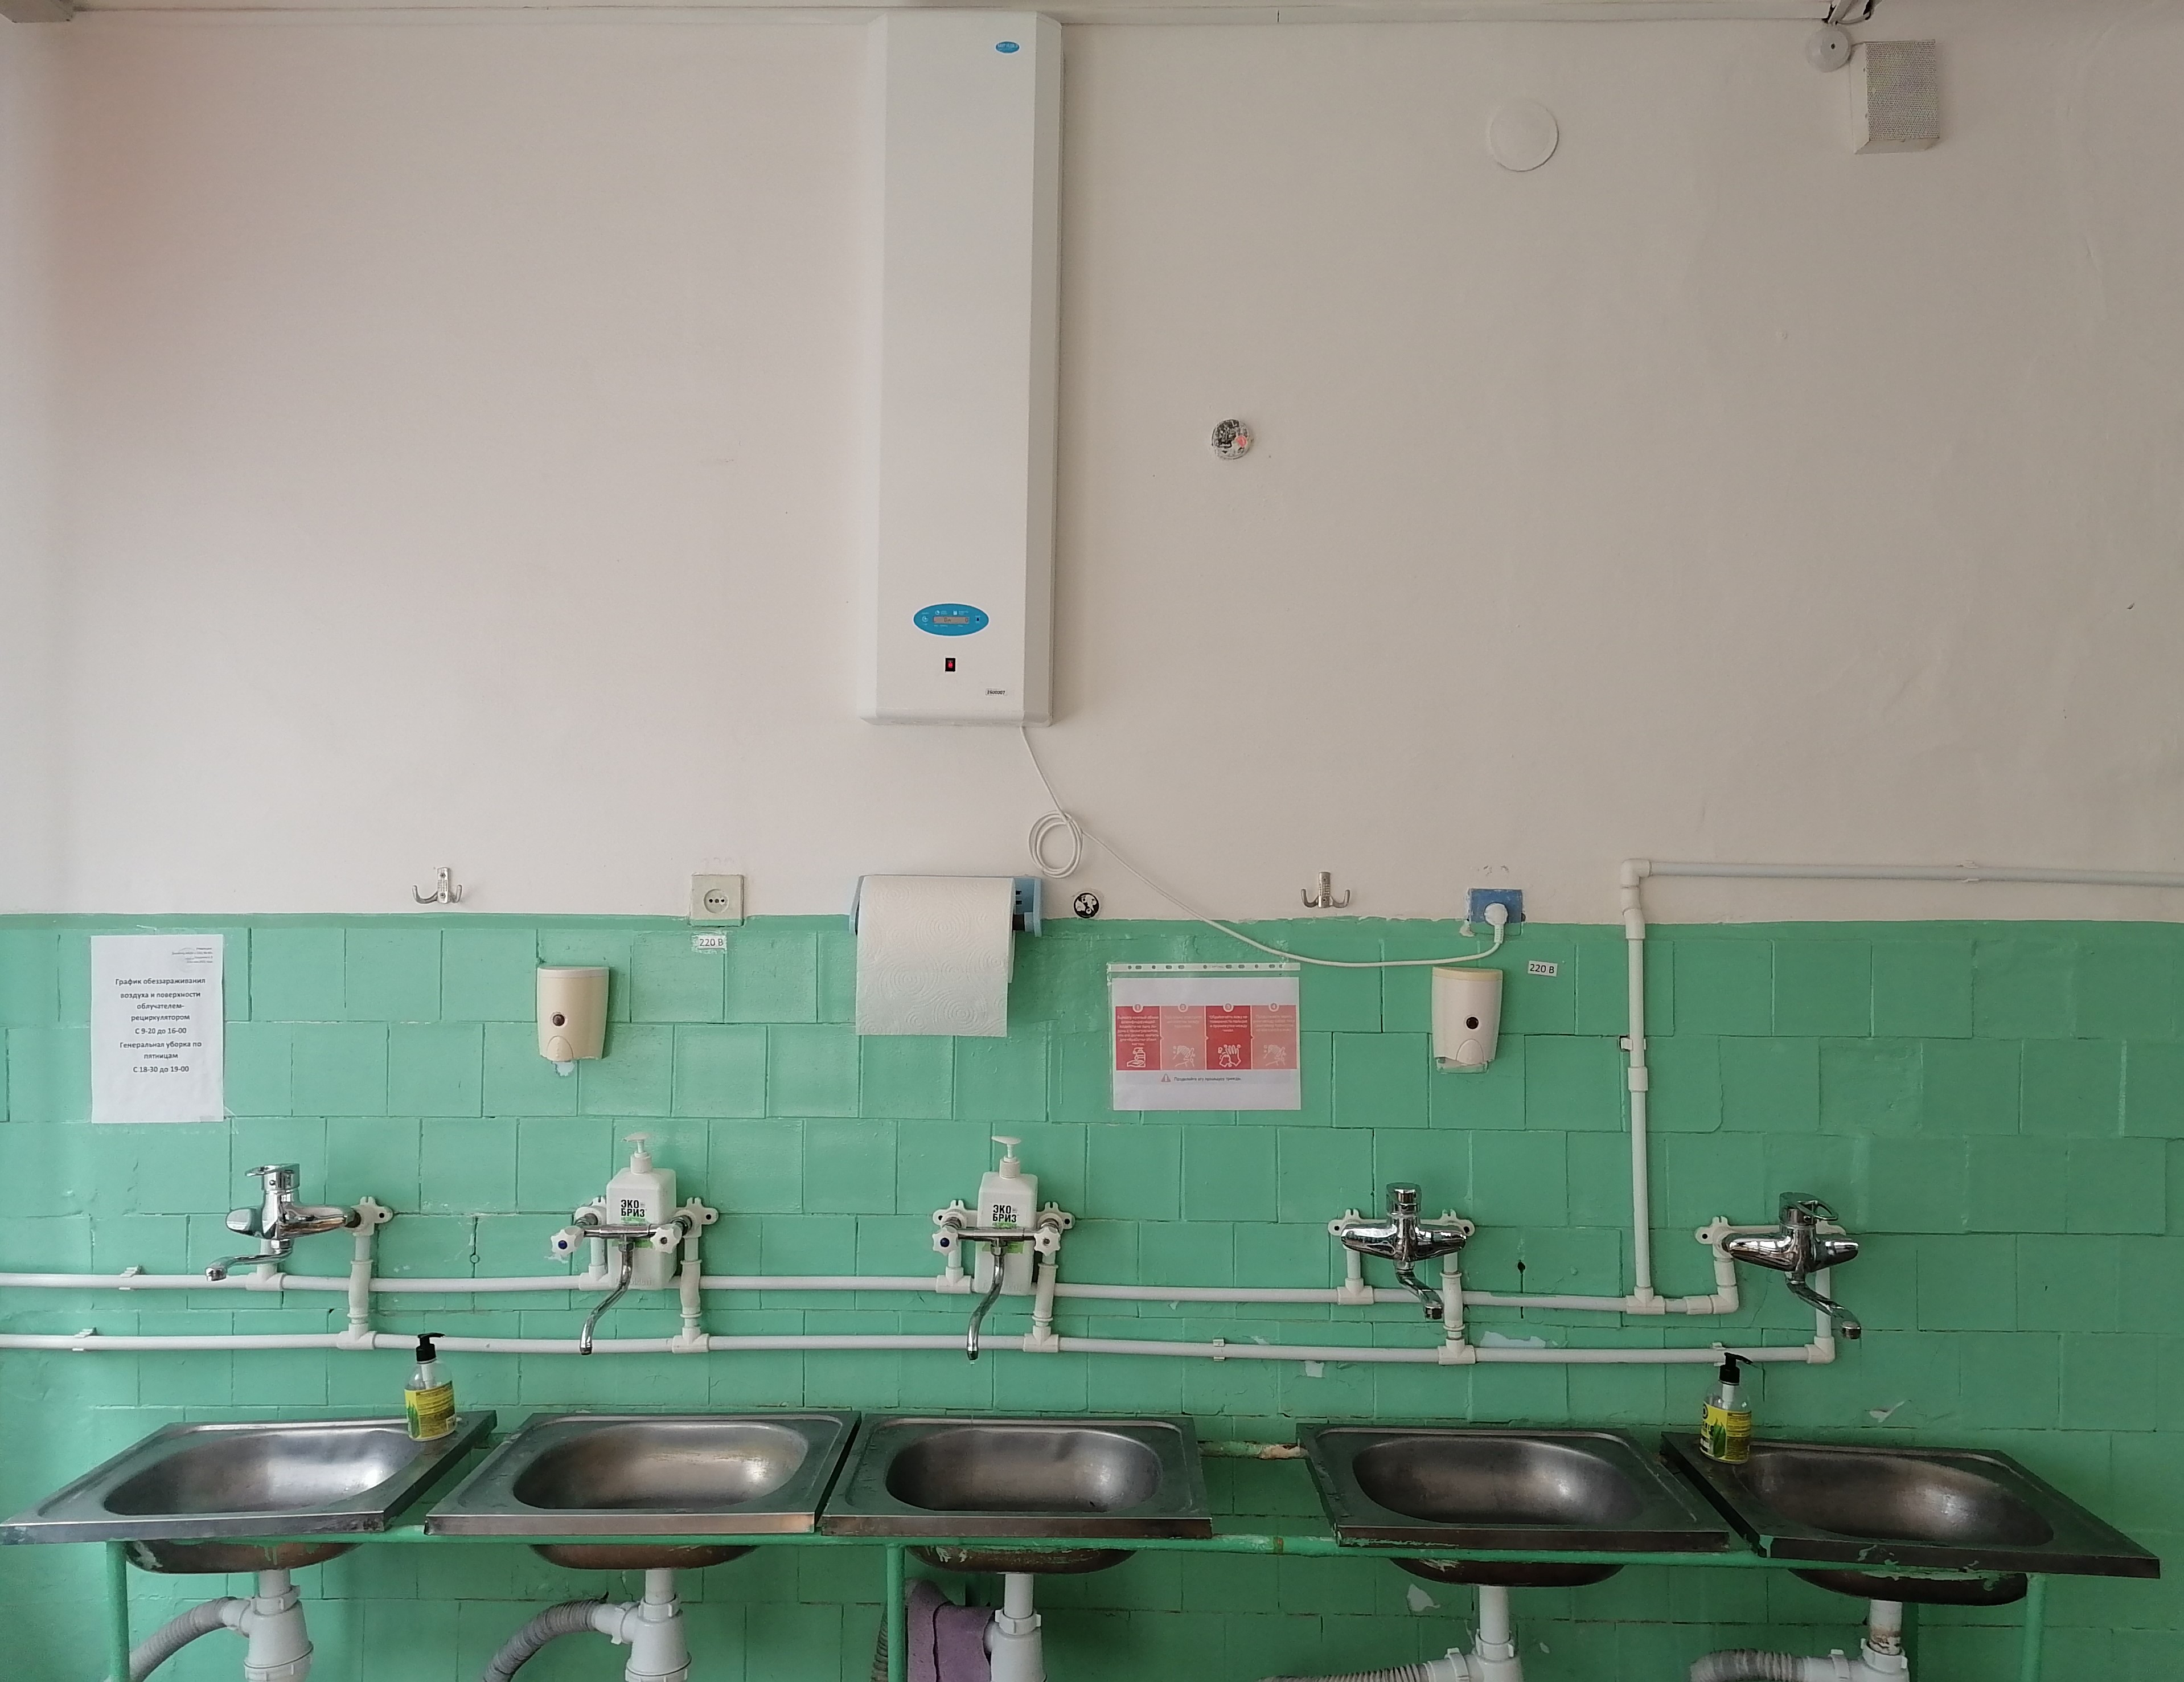 При входе в обеденный зал имеются умывальник для мытья рук с подводом горячей и холодной воды, а также бактерицидный рециркулятор